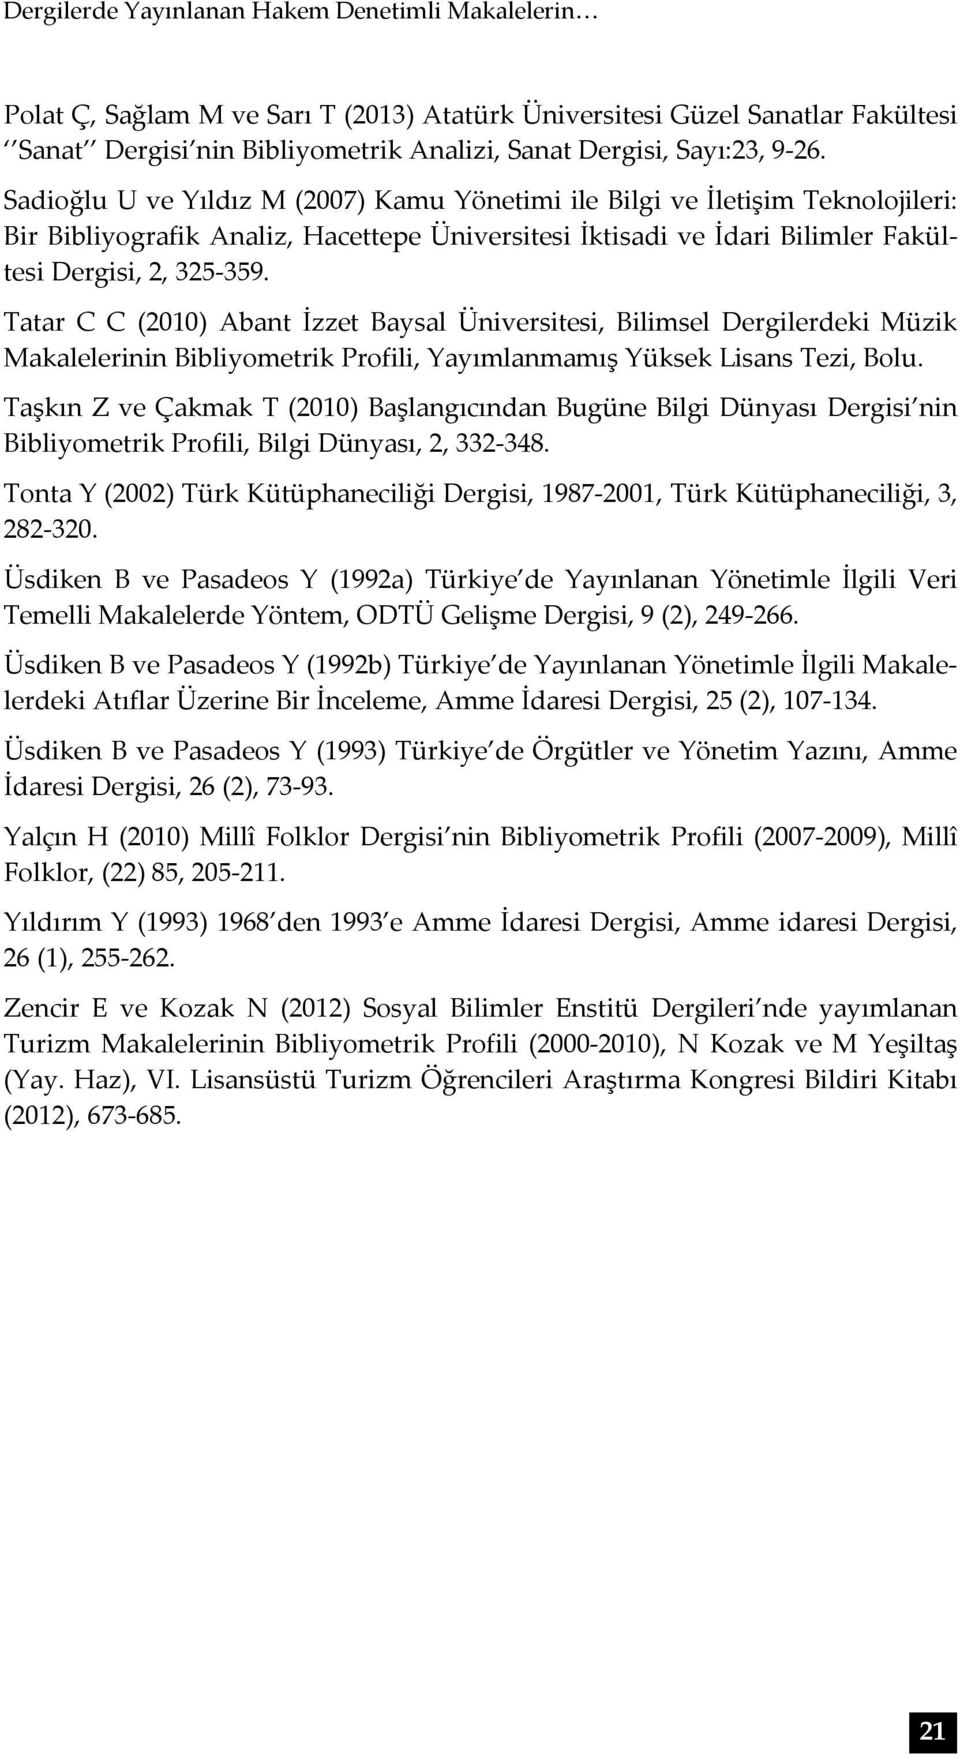 Tatar C C (2010) Abant İzzet Baysal, Bilimsel Dergilerdeki Müzik Makalelerinin Bibliyometrik Profili, Yayımlanmamış Yüksek Lisans Tezi, Bolu.